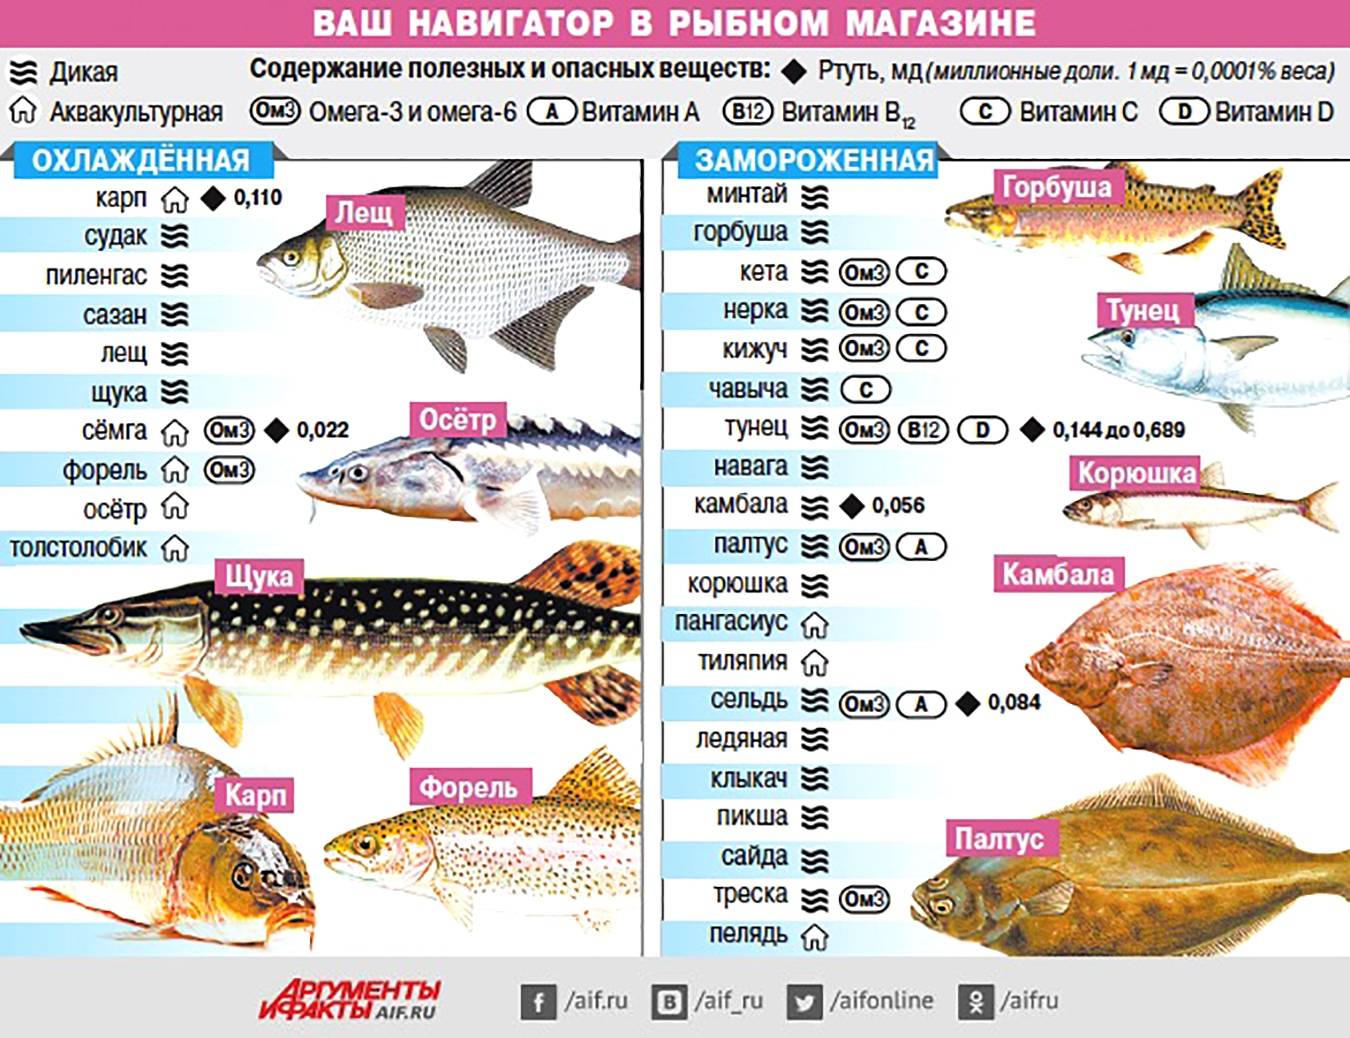 Самые популярные сорта рыбы. Самые полезные сорта рыбы. Содержание витаминов в рыбе. Таблица полезной рыбы.